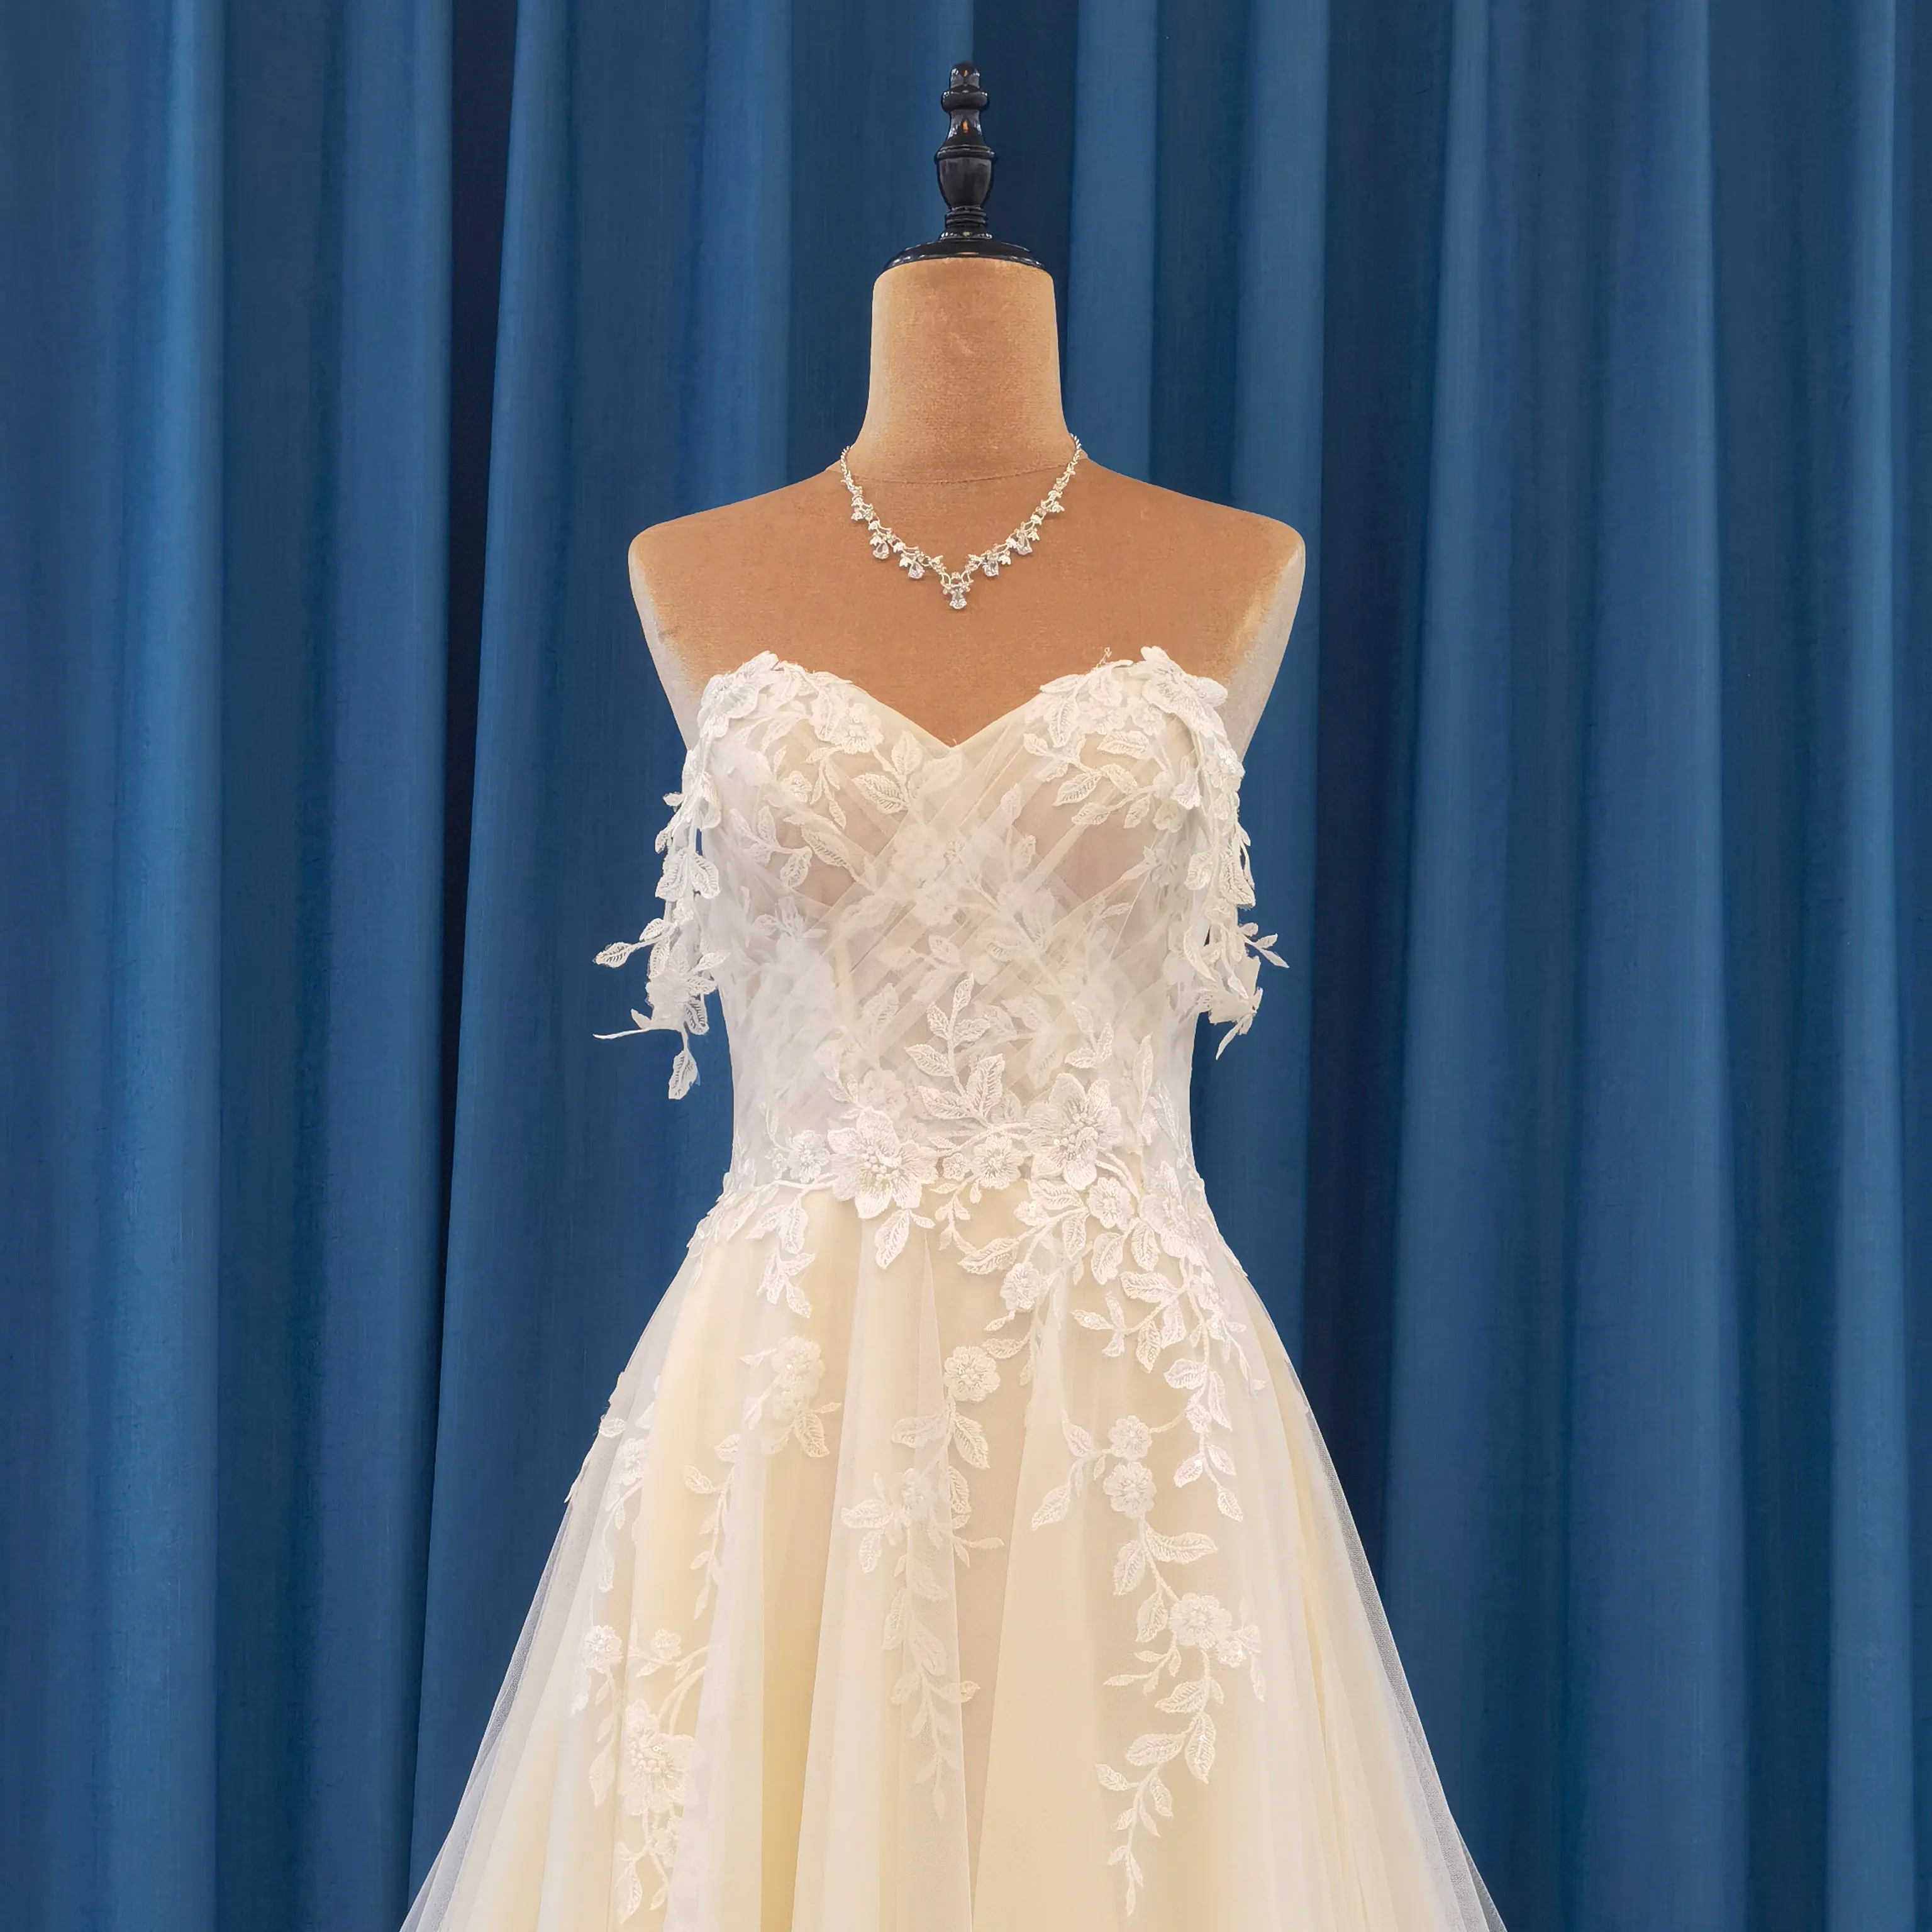 Die Starry Sky Wedding hat die beste schöne Champagner-Ballkleid-Braut neu entworfen